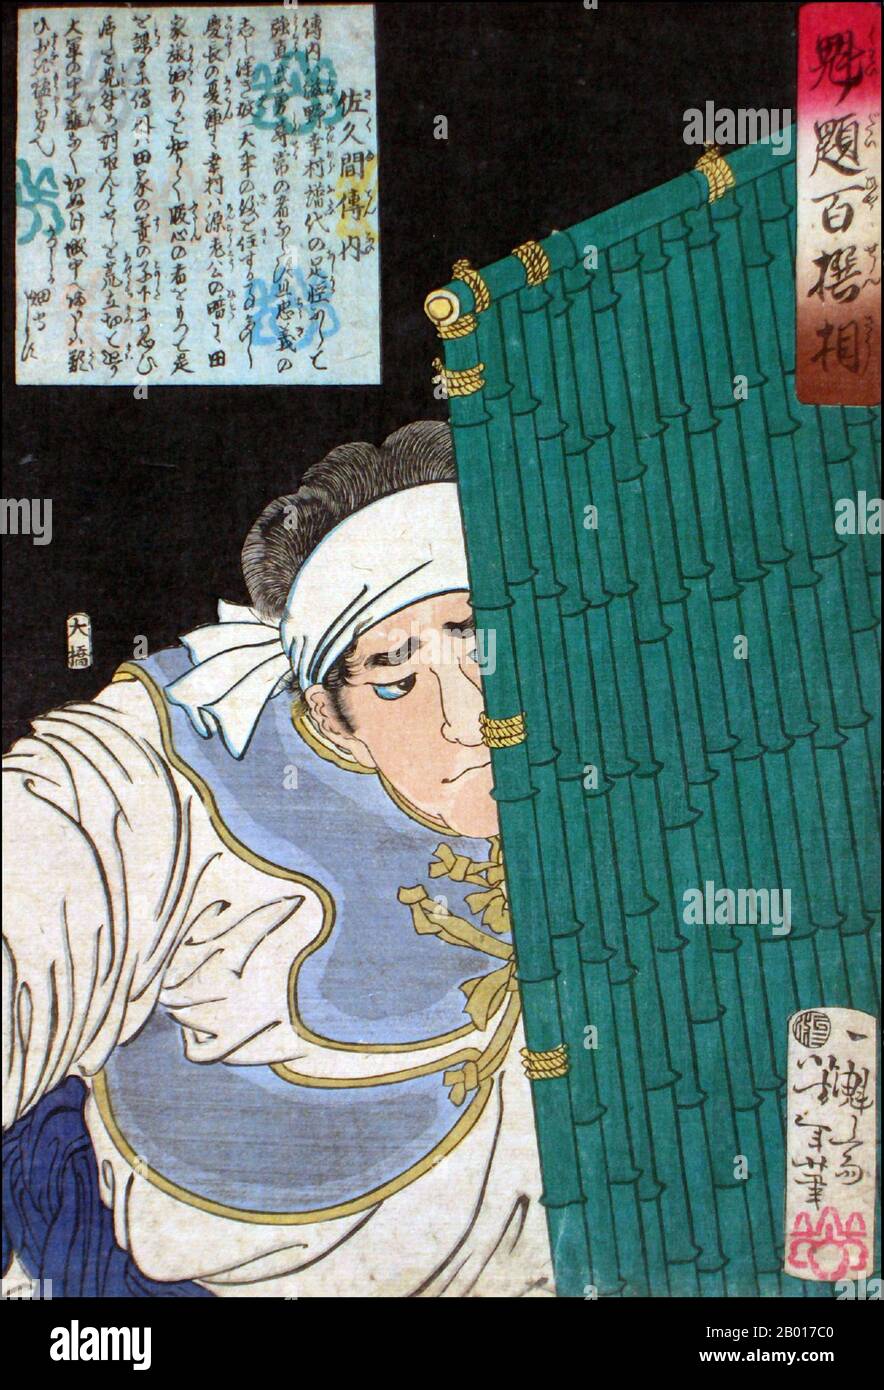 Japon: 'sakuma Dennai avec un bouclier de bambou'.Imprimé Ukiyo-e de la série 'Heroes of the Water Margin' de Tsukioka Yoshitoshi (1839 - 9 juin 1892), 1869.Tsukioka Yoshitoshi, également appelé Tiso Yoshitoshi, était un artiste japonais.Il est largement reconnu comme le dernier grand maître d'Ukiyo-e, un type d'impression de blocs de bois japonais.Il est également considéré comme l'un des plus grands innovateurs de la forme.Sa carrière s'est étendue à deux époques : les dernières années du Japon féodal et les premières années du Japon moderne après la restauration de Meiji. Banque D'Images